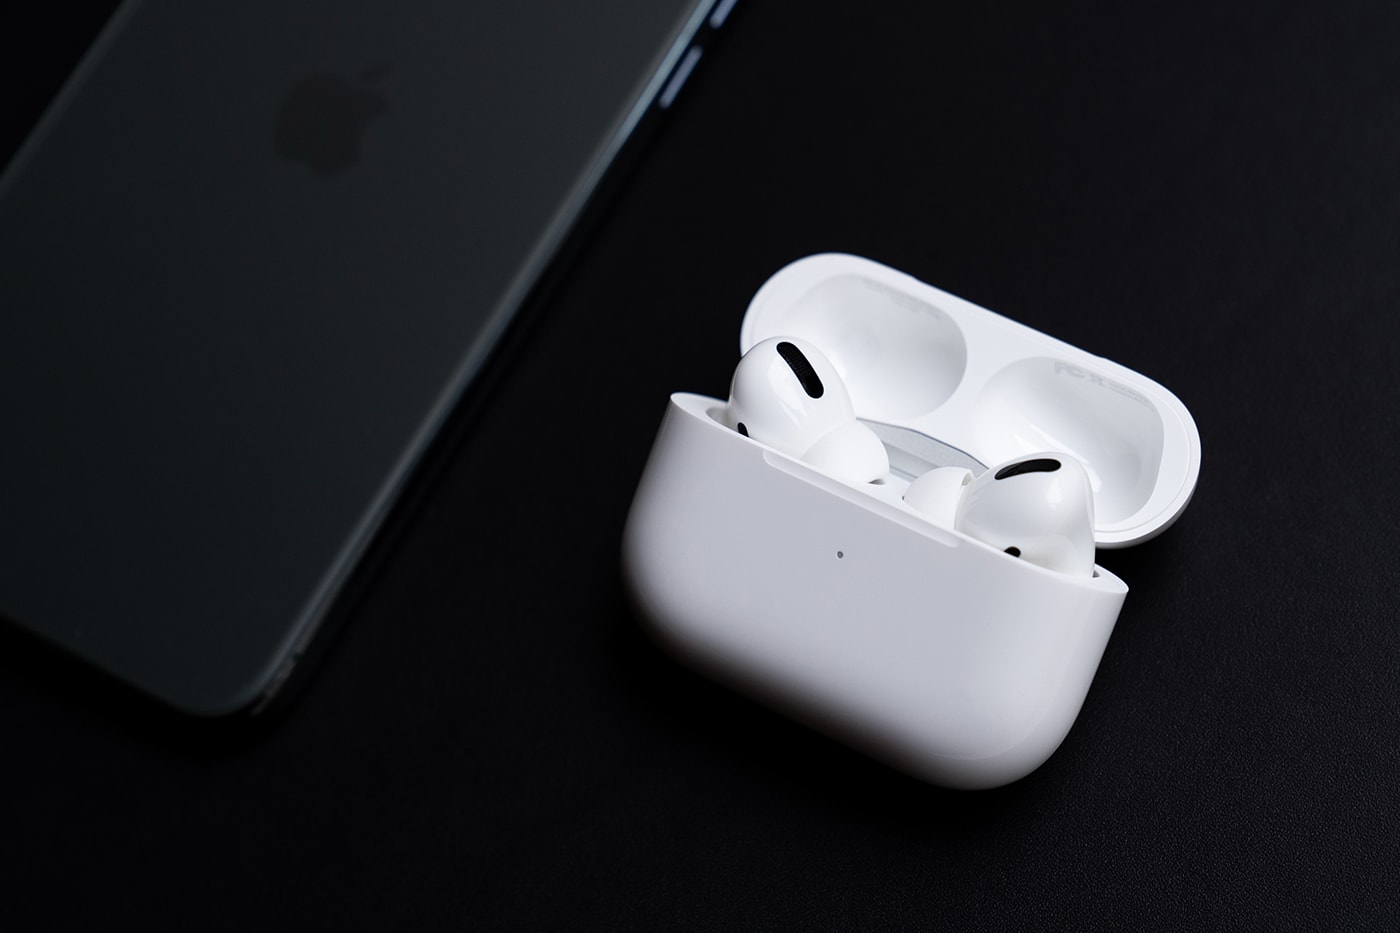 애플 에어팟 프로 실물 이미지 공개, 노이크 캔슬링, 커널형 이어폰, 아이폰 11